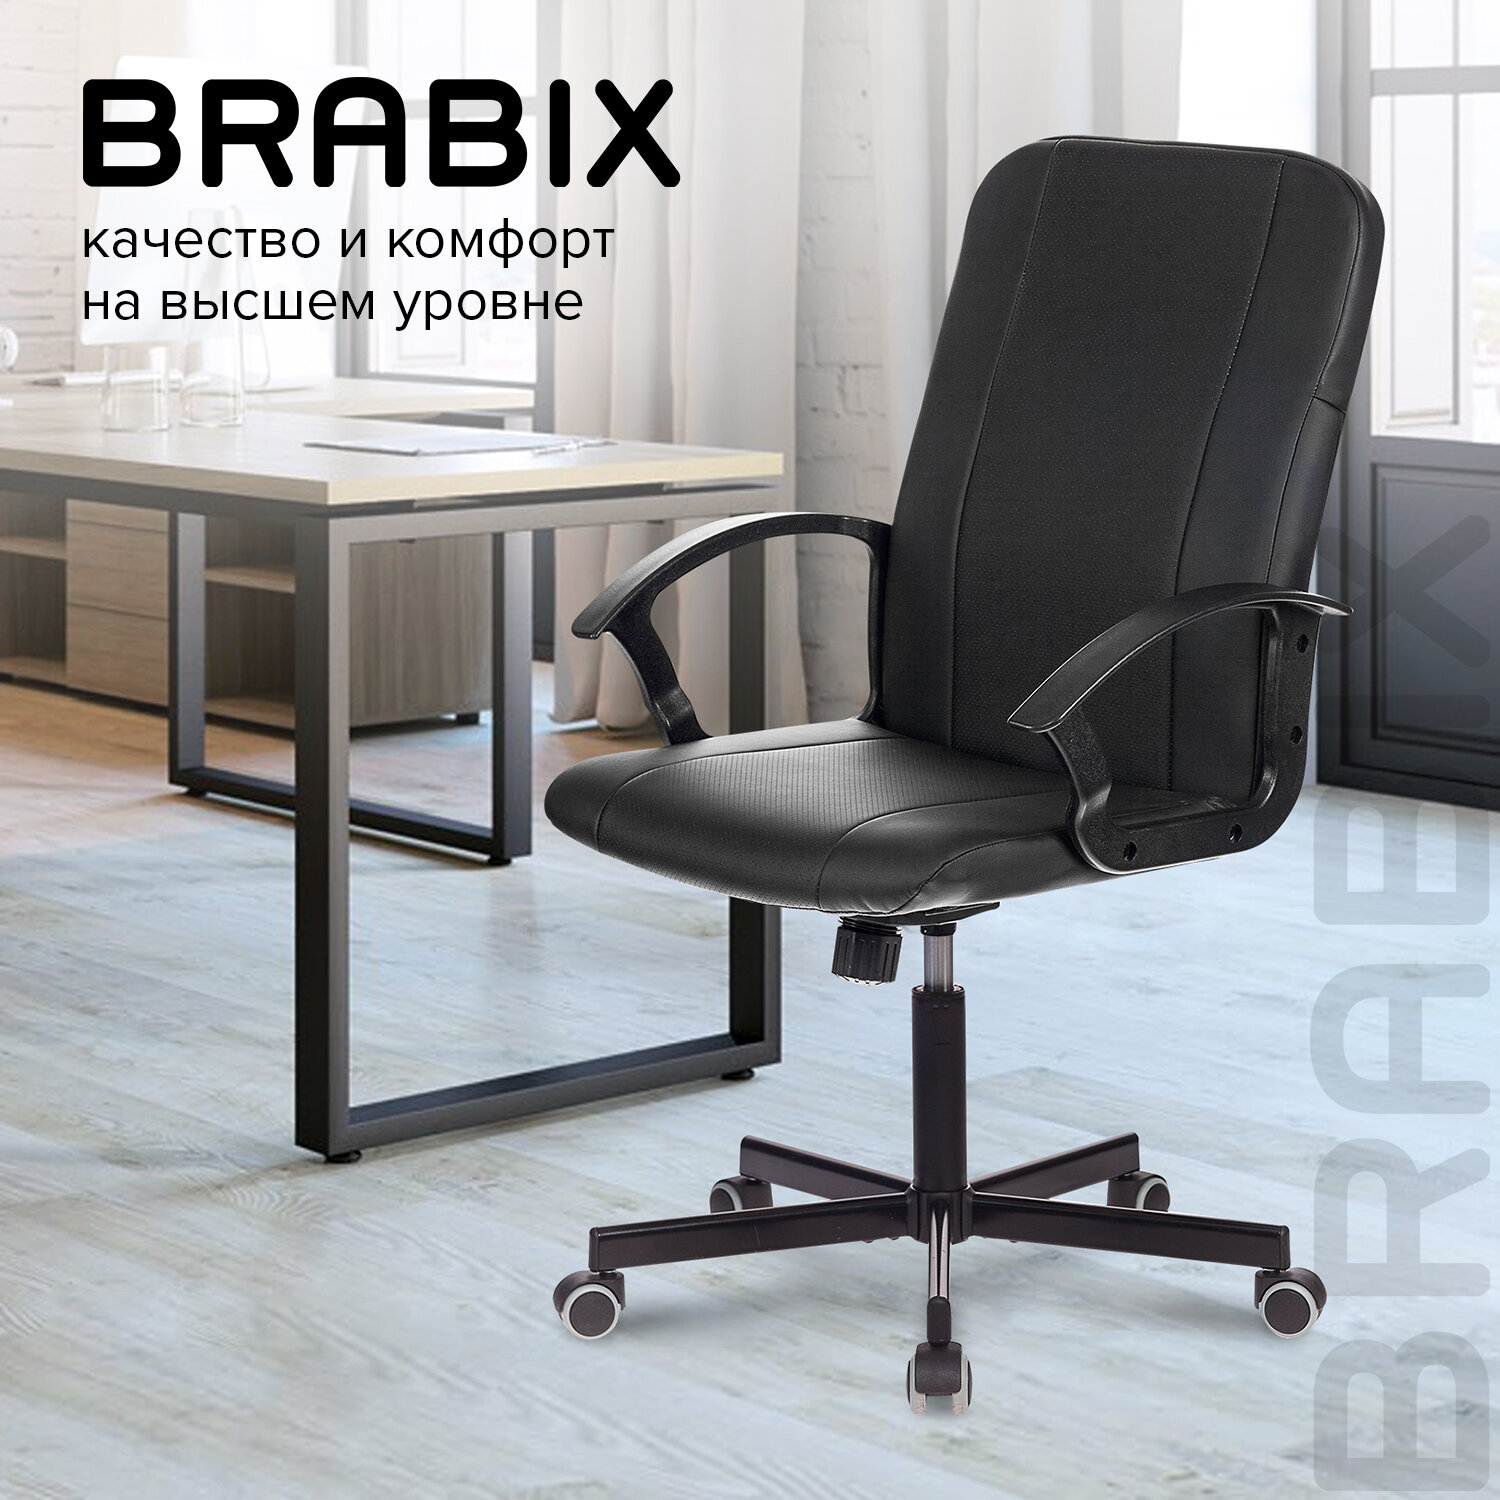 кресло офисное brabix strike ex 525